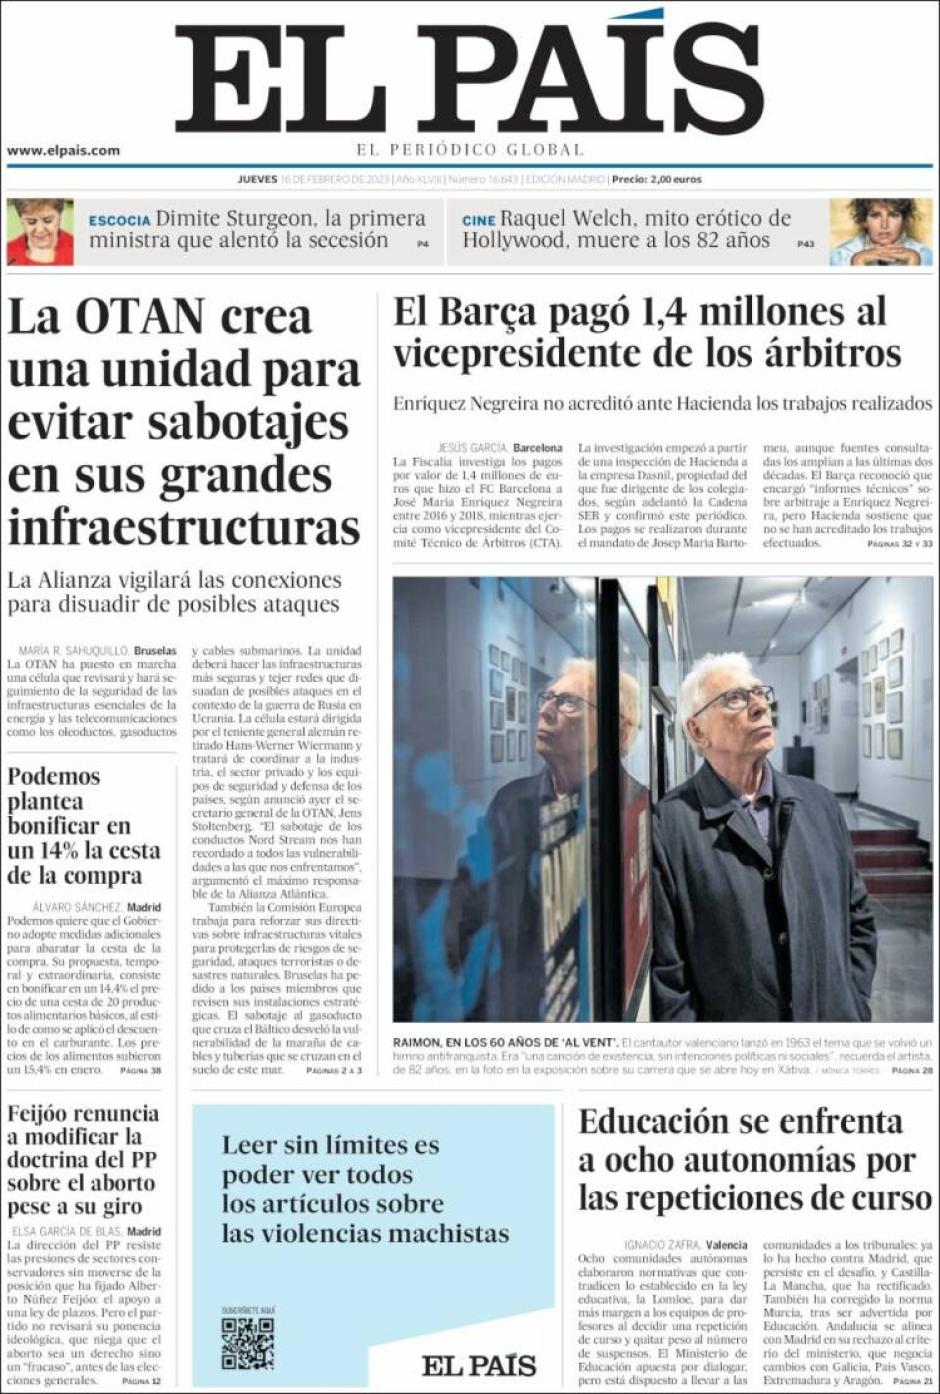 El País dedica parte de su portada a exponer lo hecho por el FC Barcelona